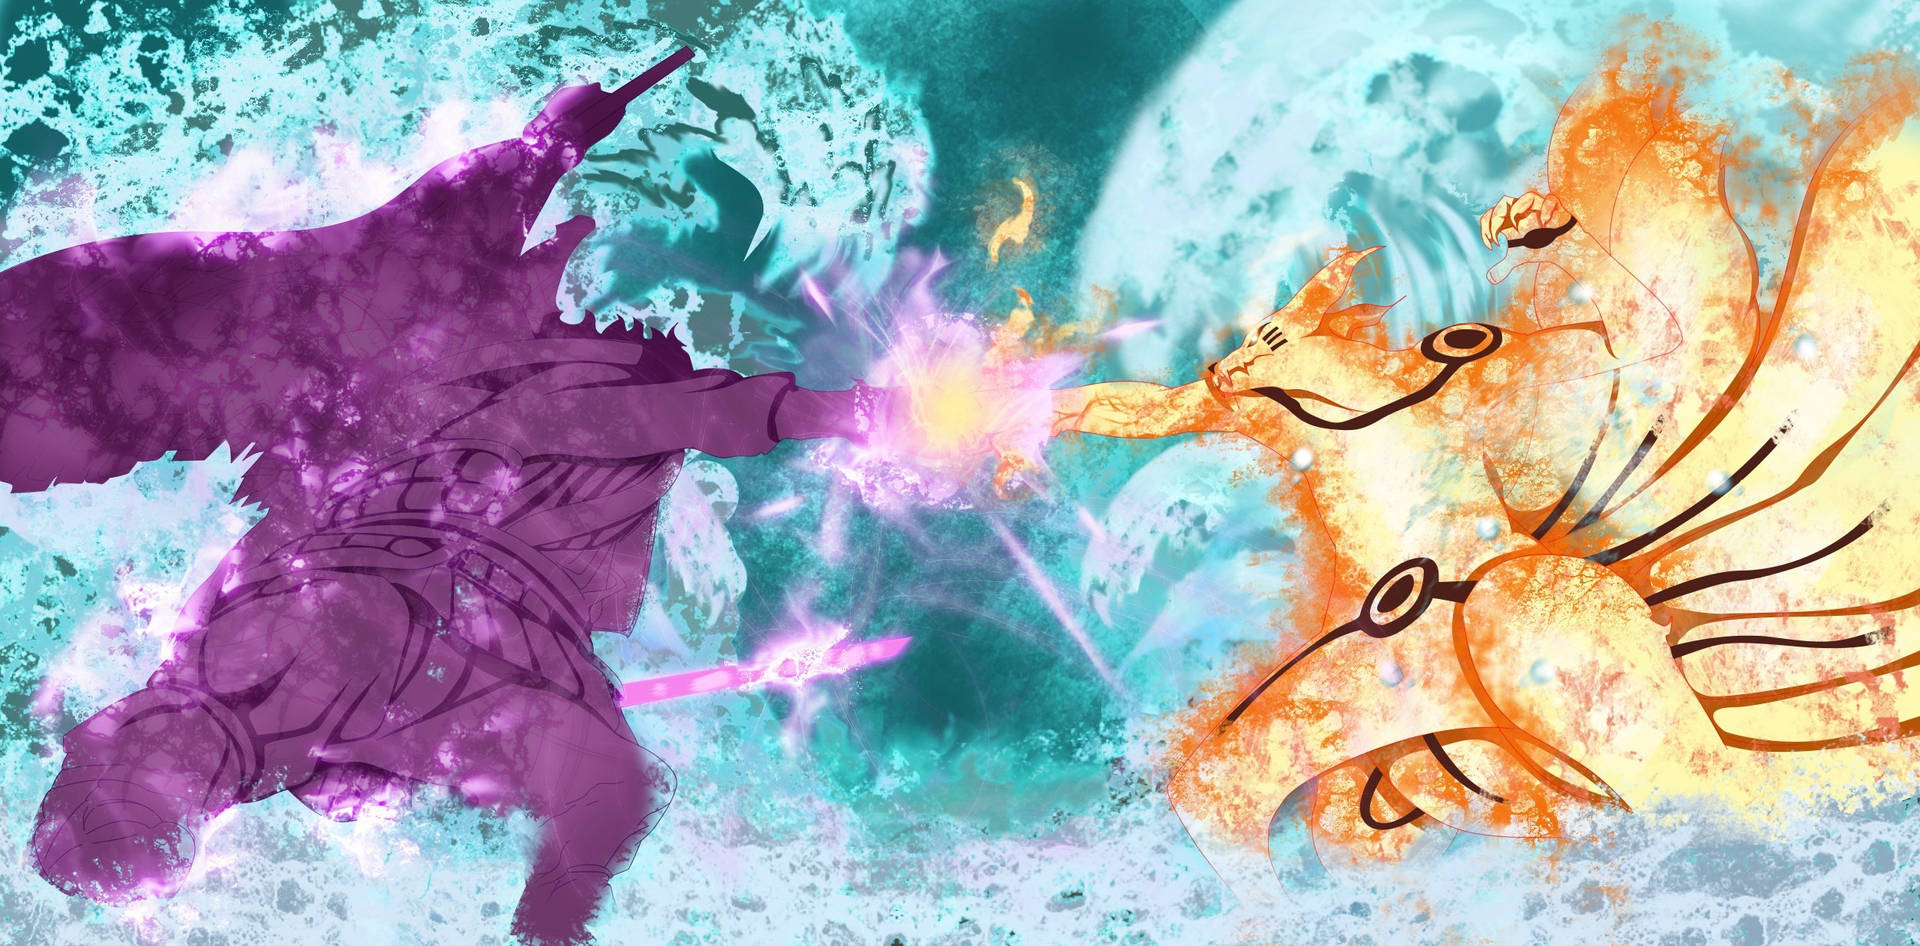 Free Sasuke Vs Naruto Wallpaper Downloads, [100+] Sasuke Vs Naruto  Wallpapers for FREE 